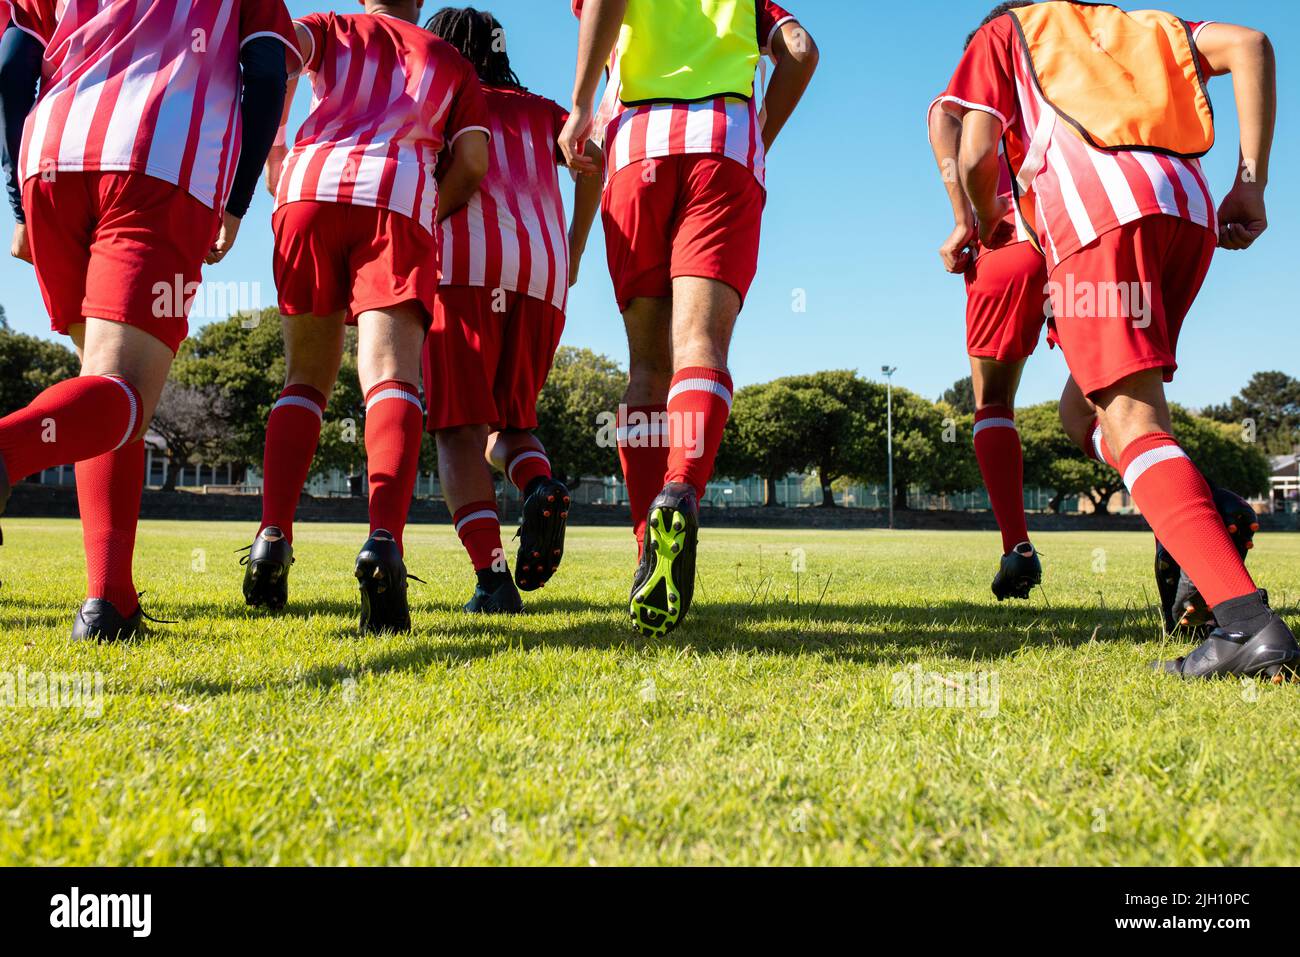 Vue en contre-plongée des athlètes masculins multiraciaux en uniforme rouge et chaussures de football sur terre herbeuse Banque D'Images